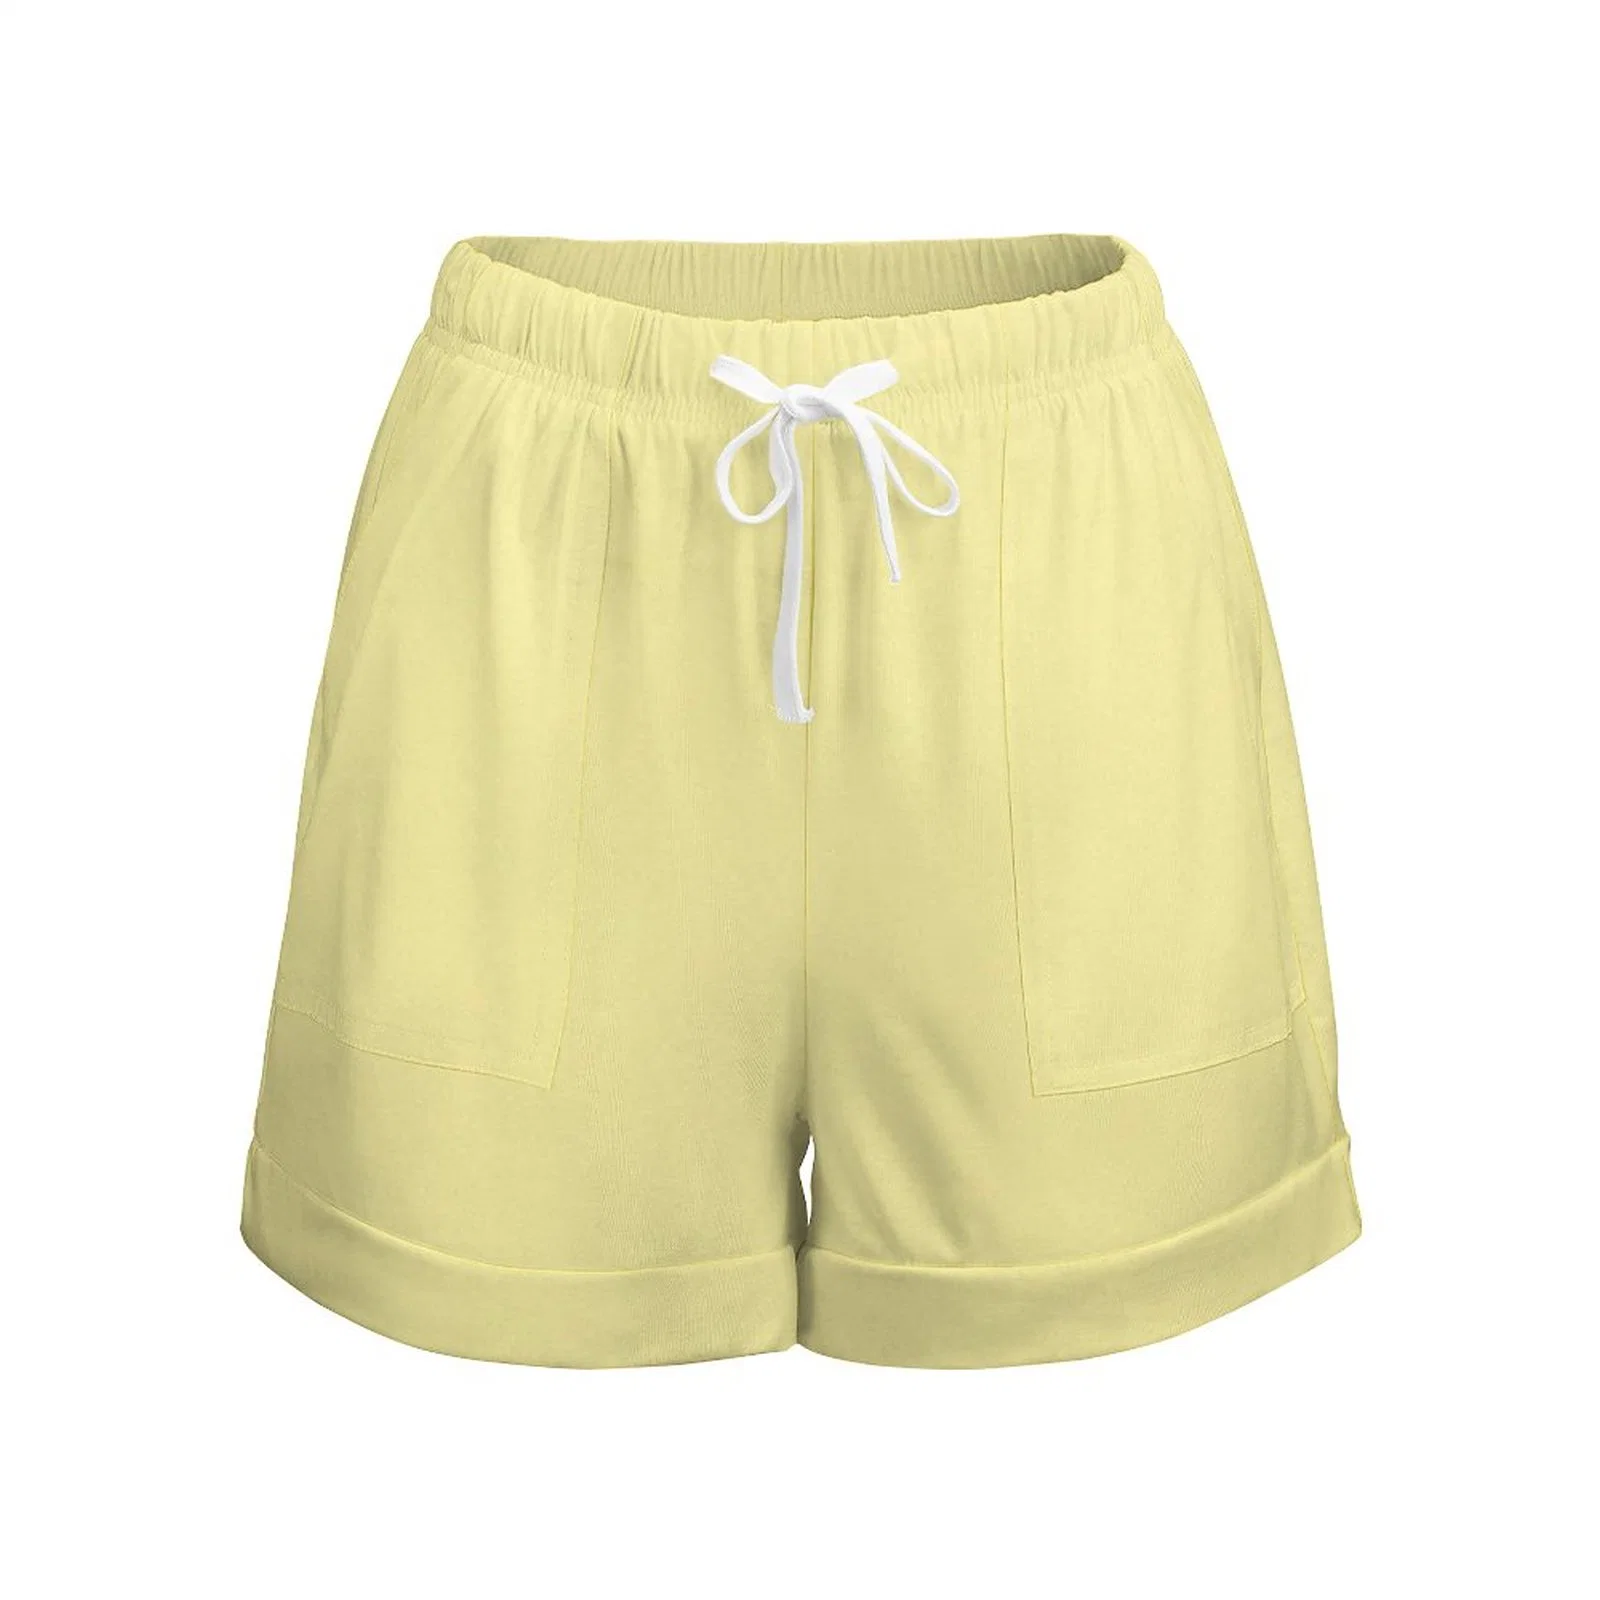 Shorts vierges personnalisés en gros pour femmes de la mode estivale avec cordon de serrage.